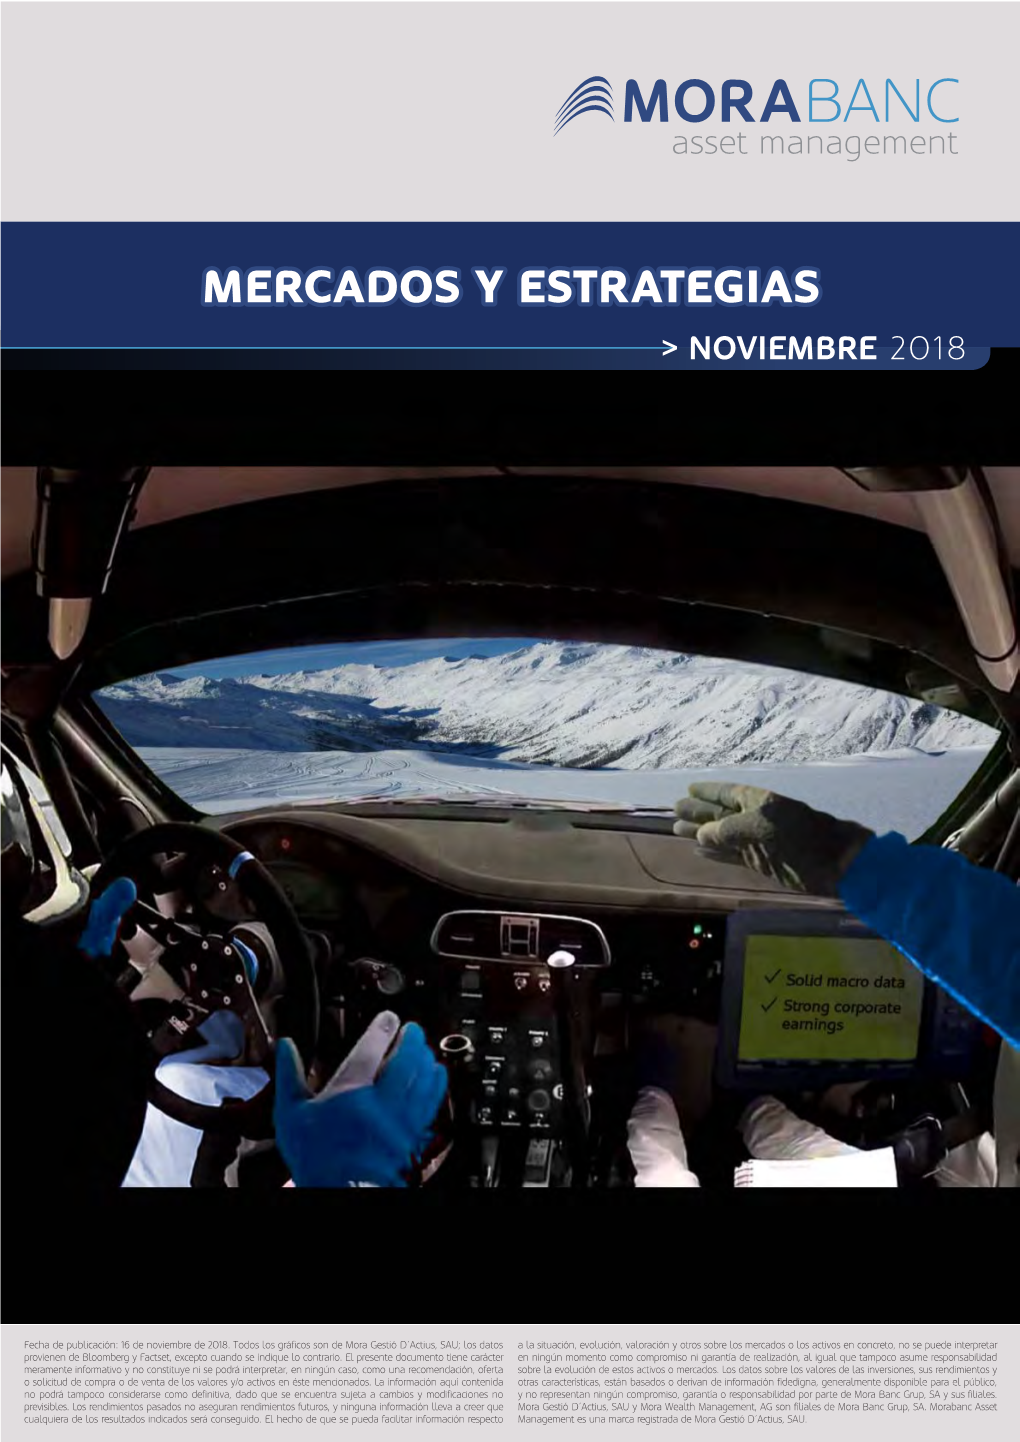 Morabanc Mercados Y Estrategias 2018 (ESP) Noviembre